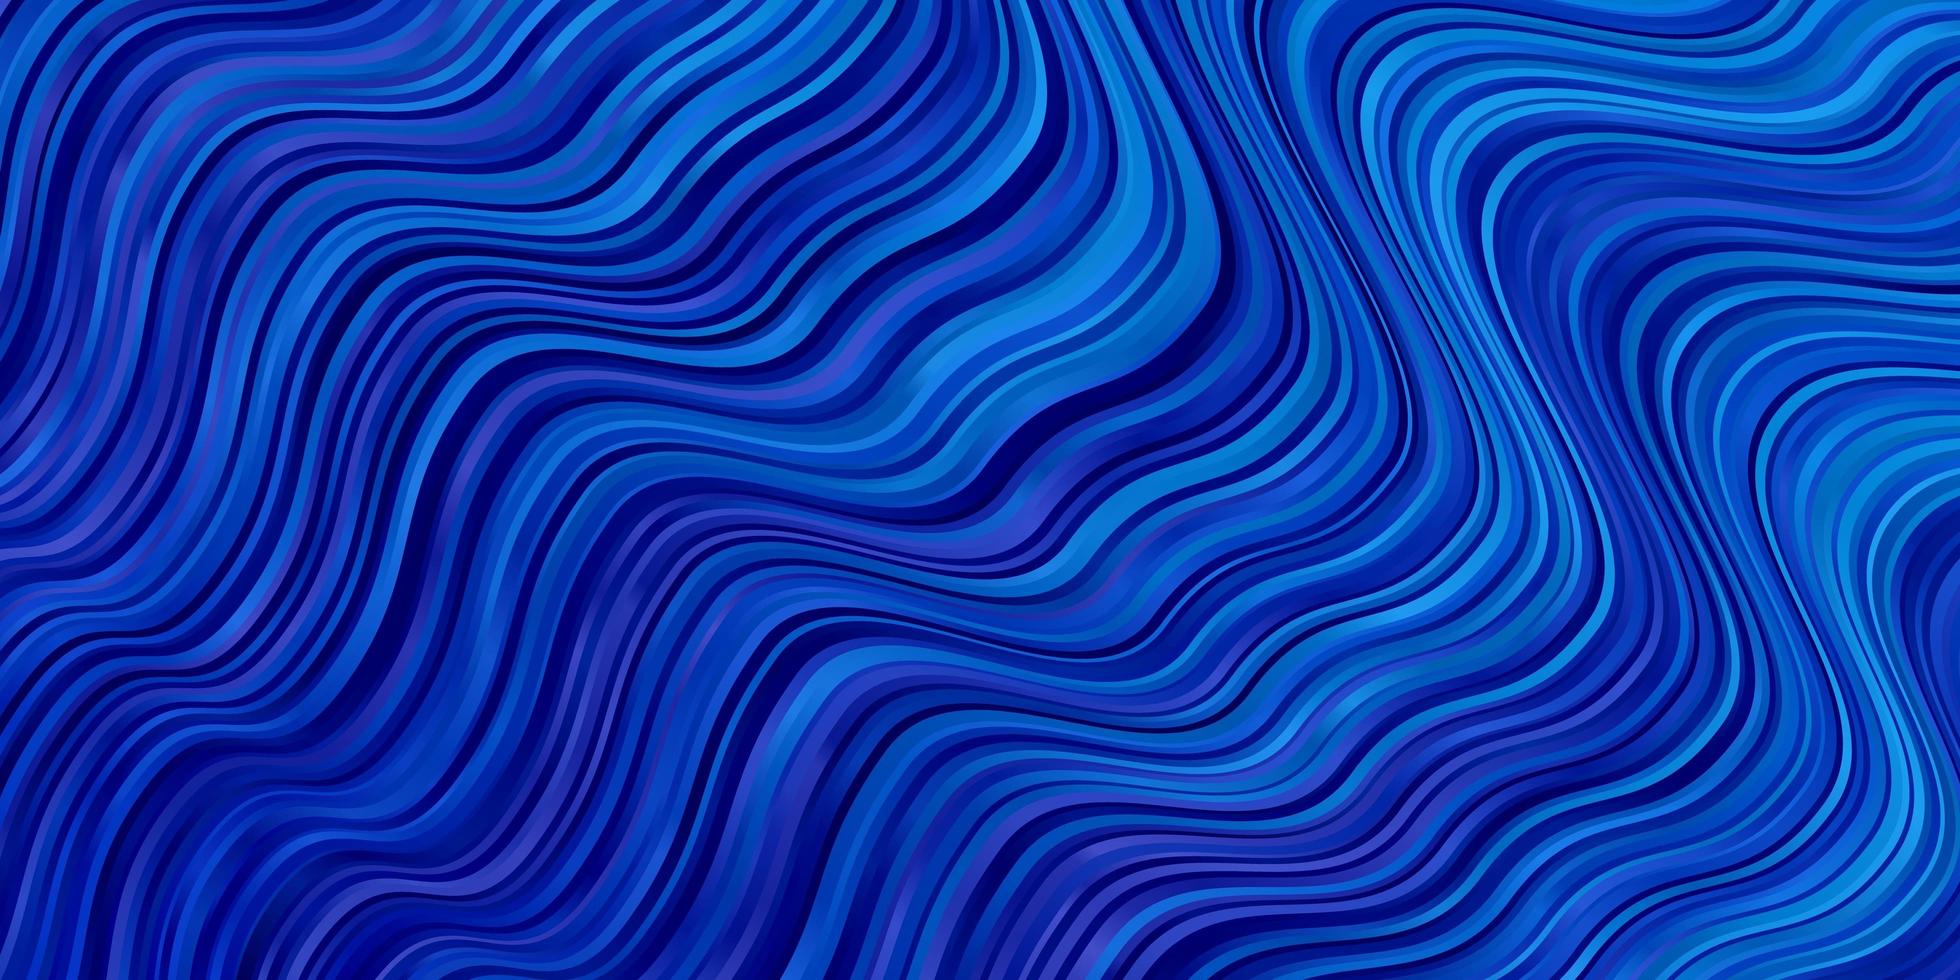 ljusblå vektor bakgrund med kurvor